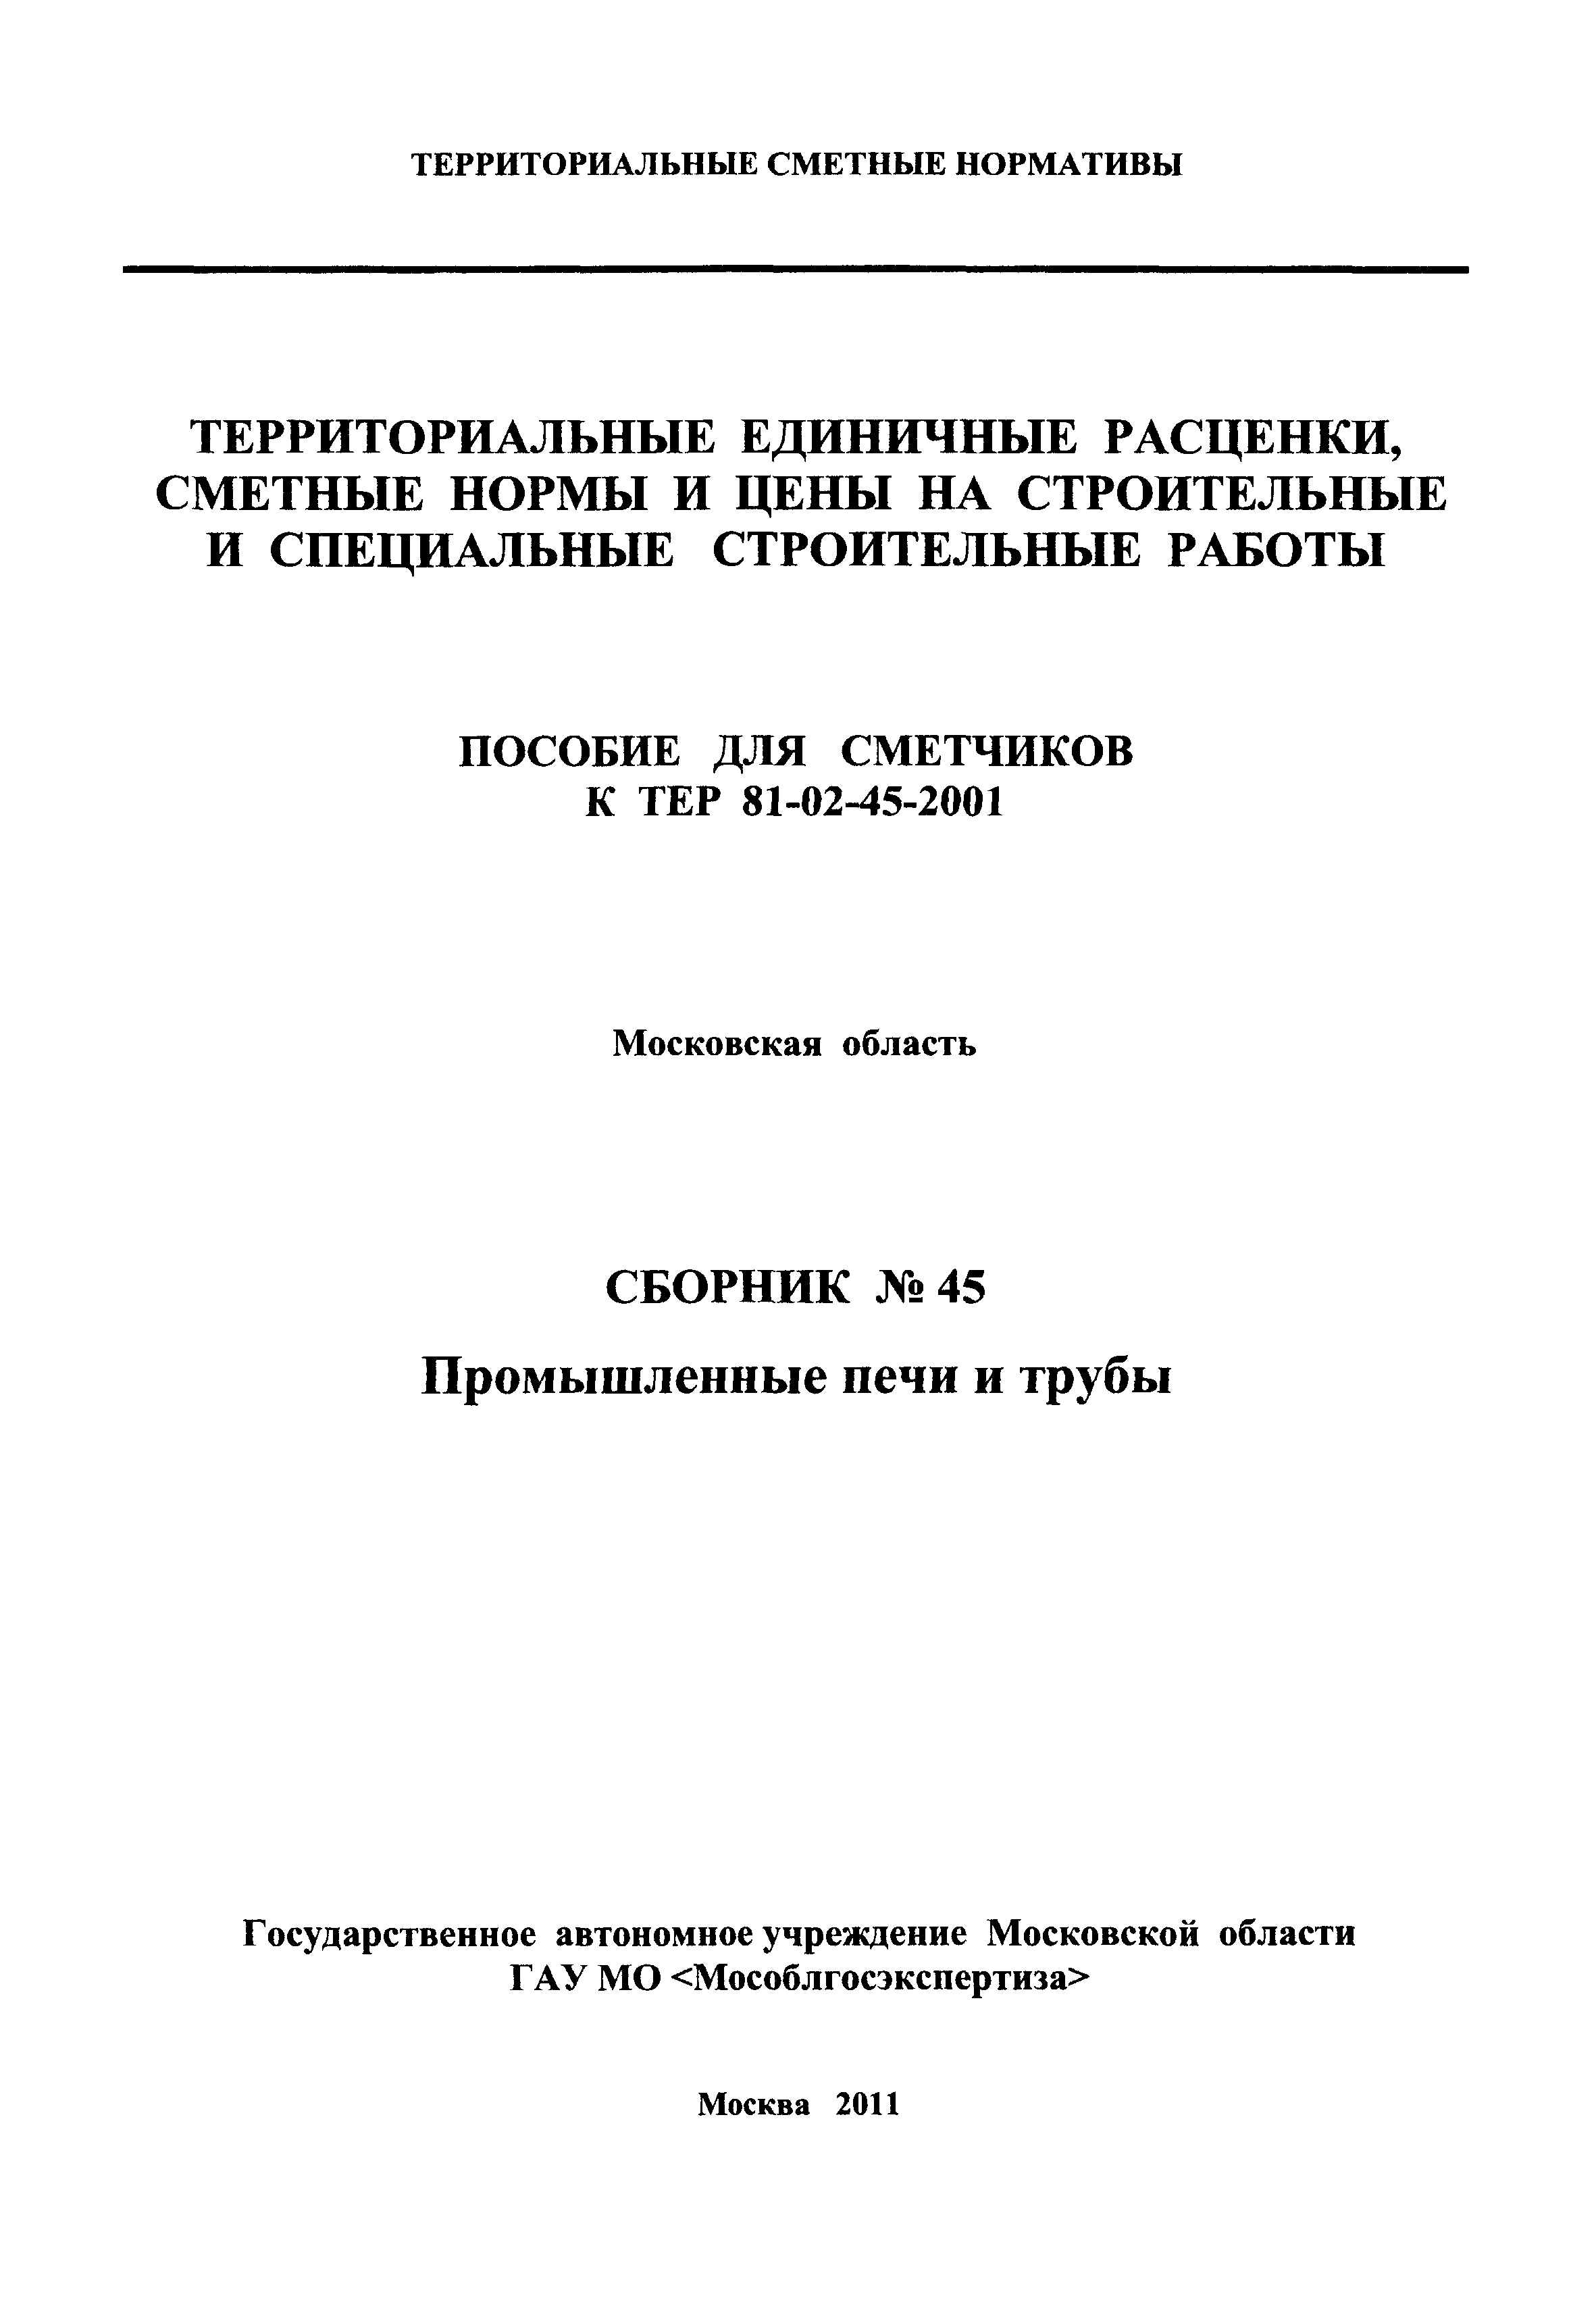 ГЭСНПиТЕР 2001-45 Московской области